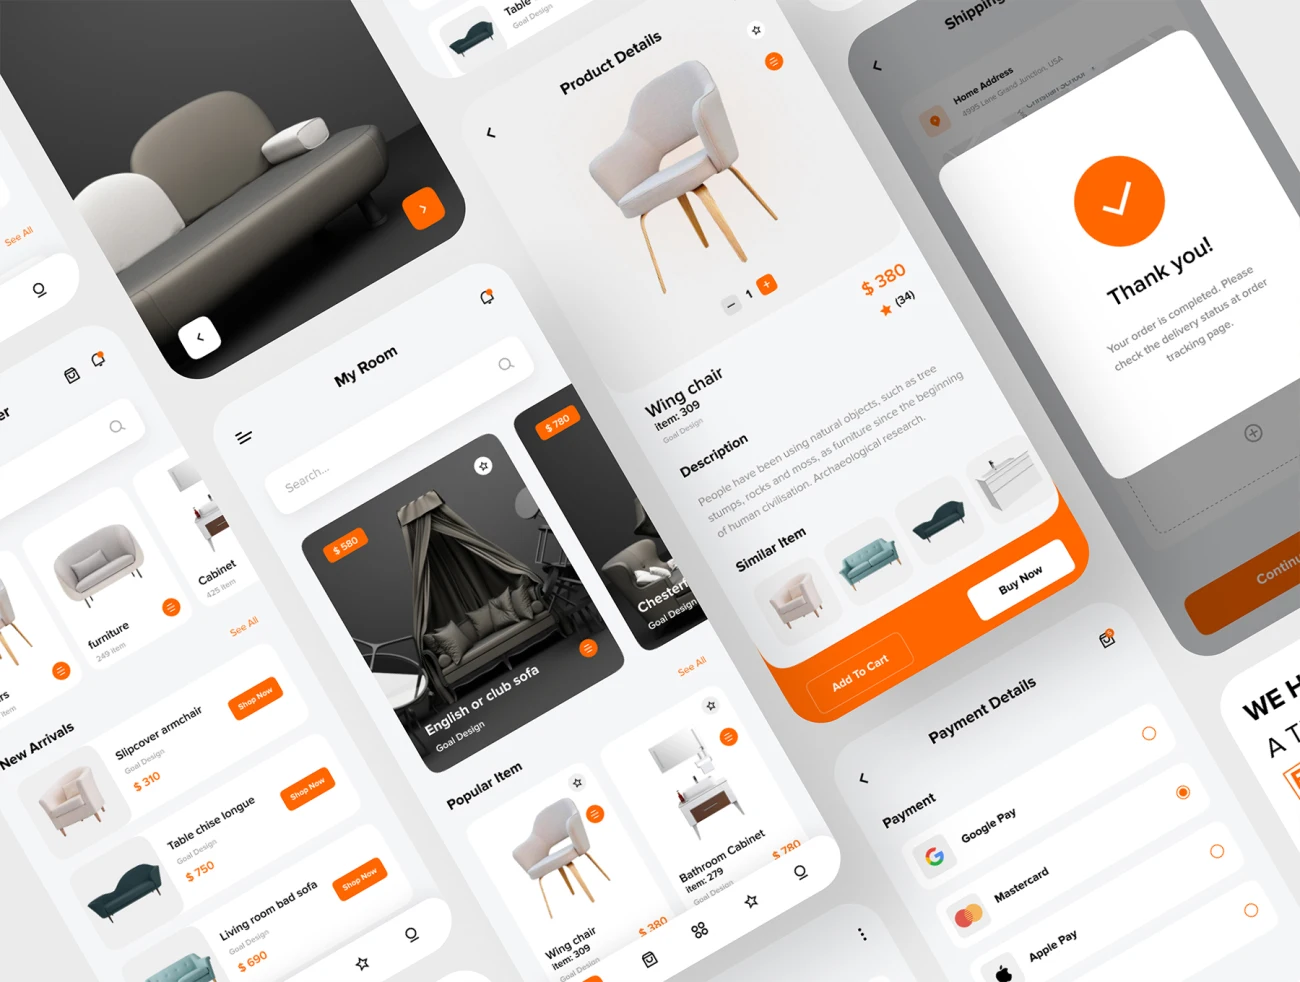 22屏家具商店简约创意应用Ui设计套件 FURNITURA – Furniture Mobile App UI Kit插图9